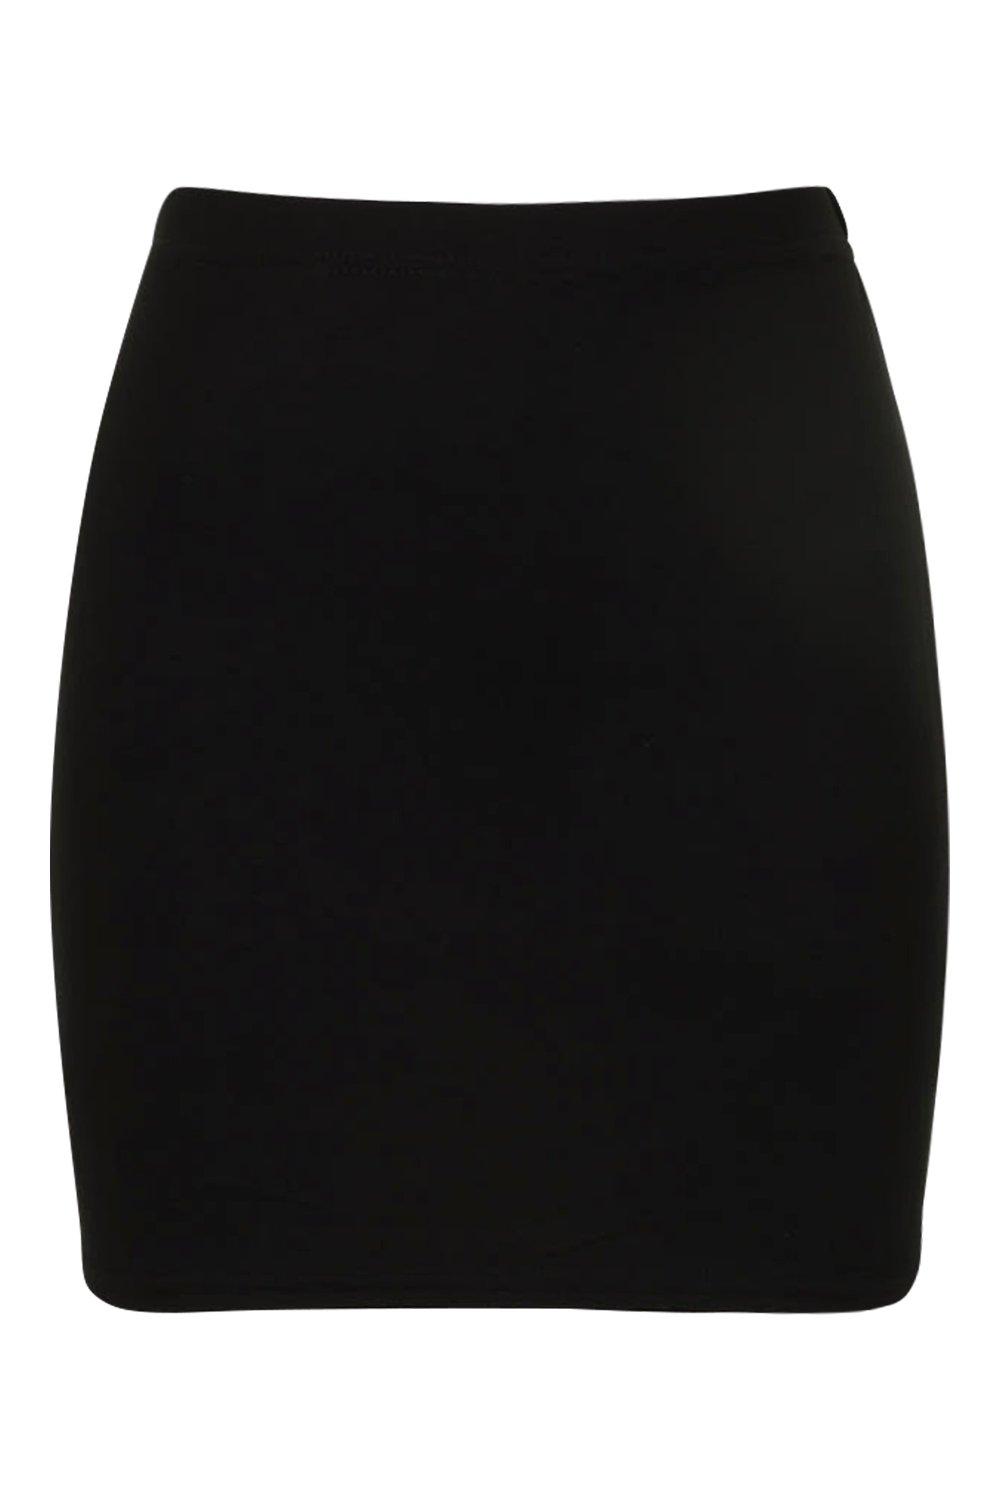 Boohoo Womens Maisy Bodycon Mini Skirt | eBay